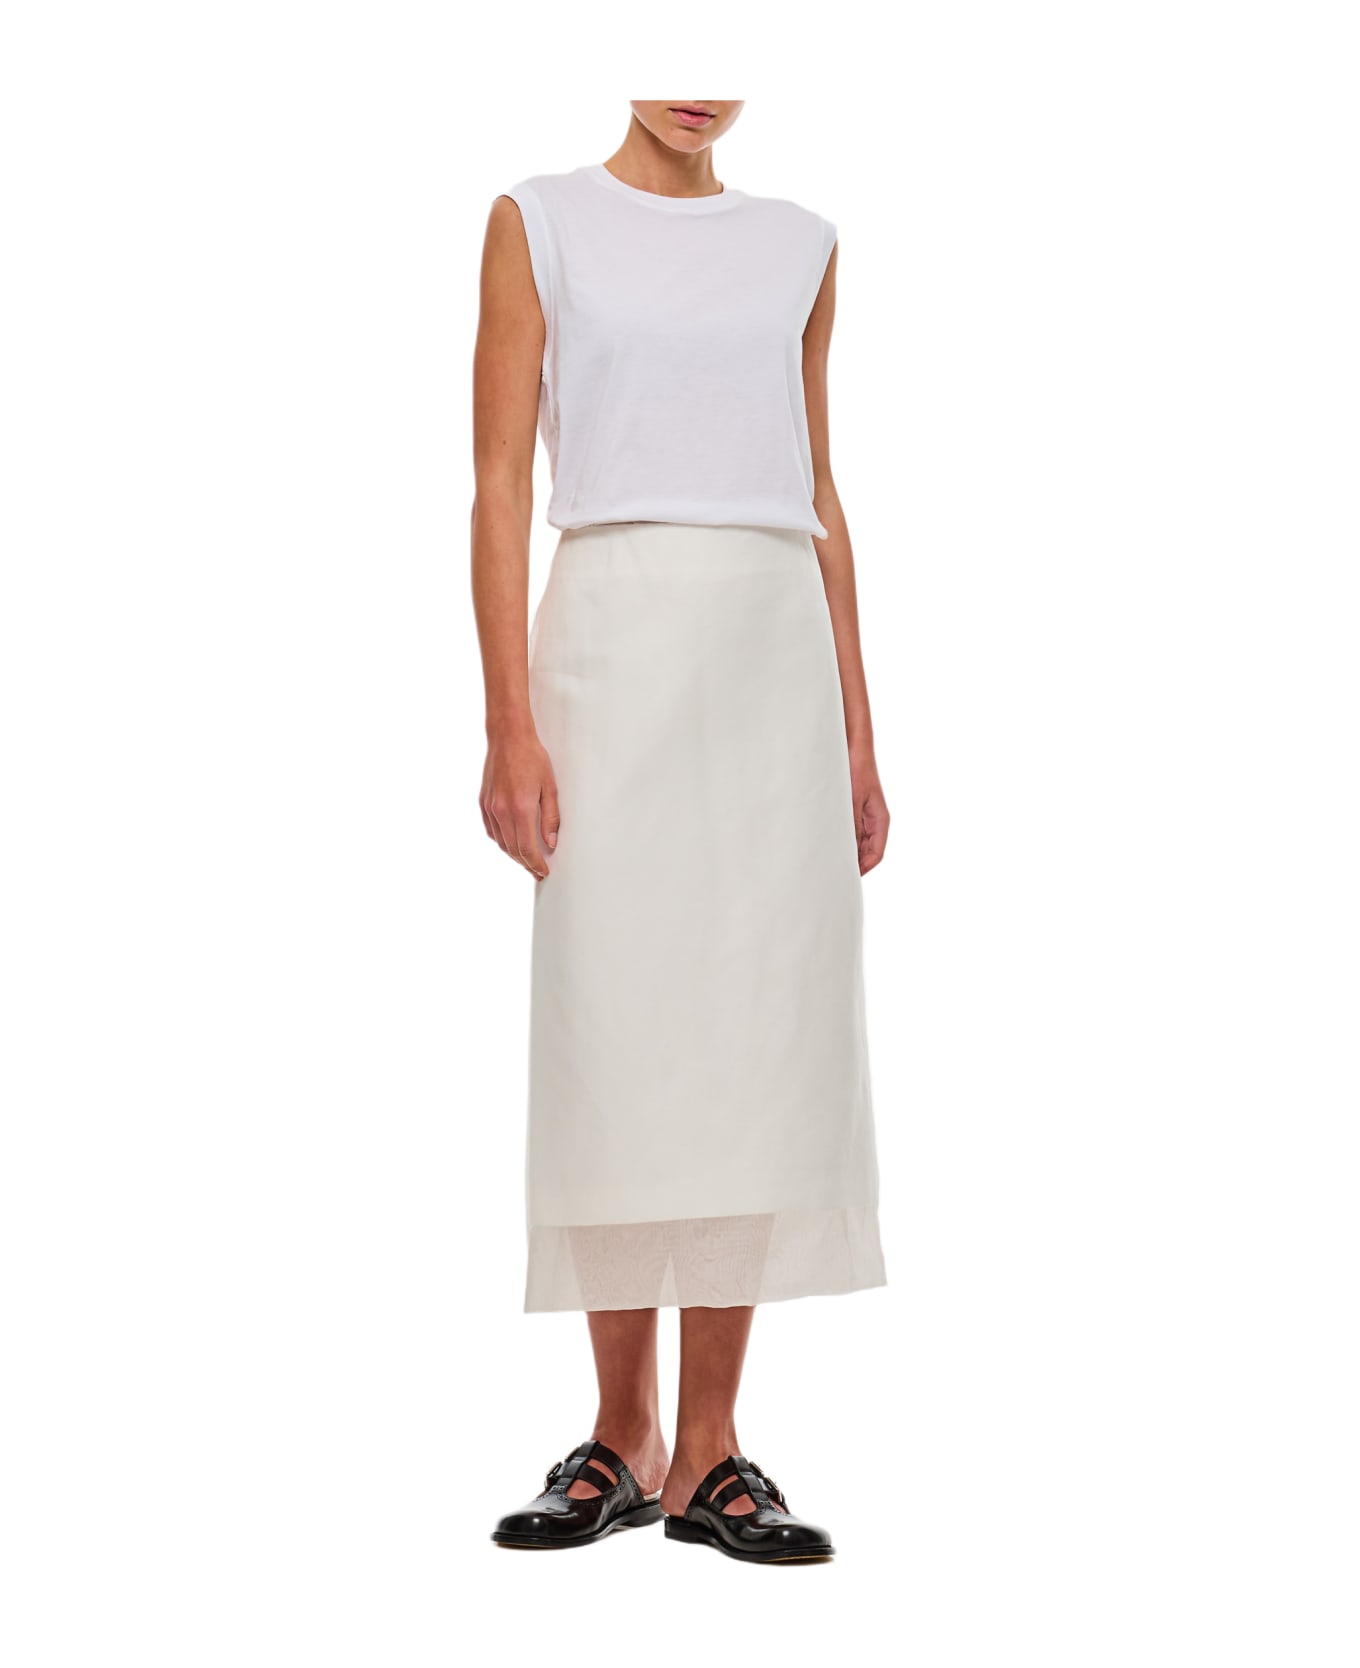 SportMax Aceti Skirt - WHITE